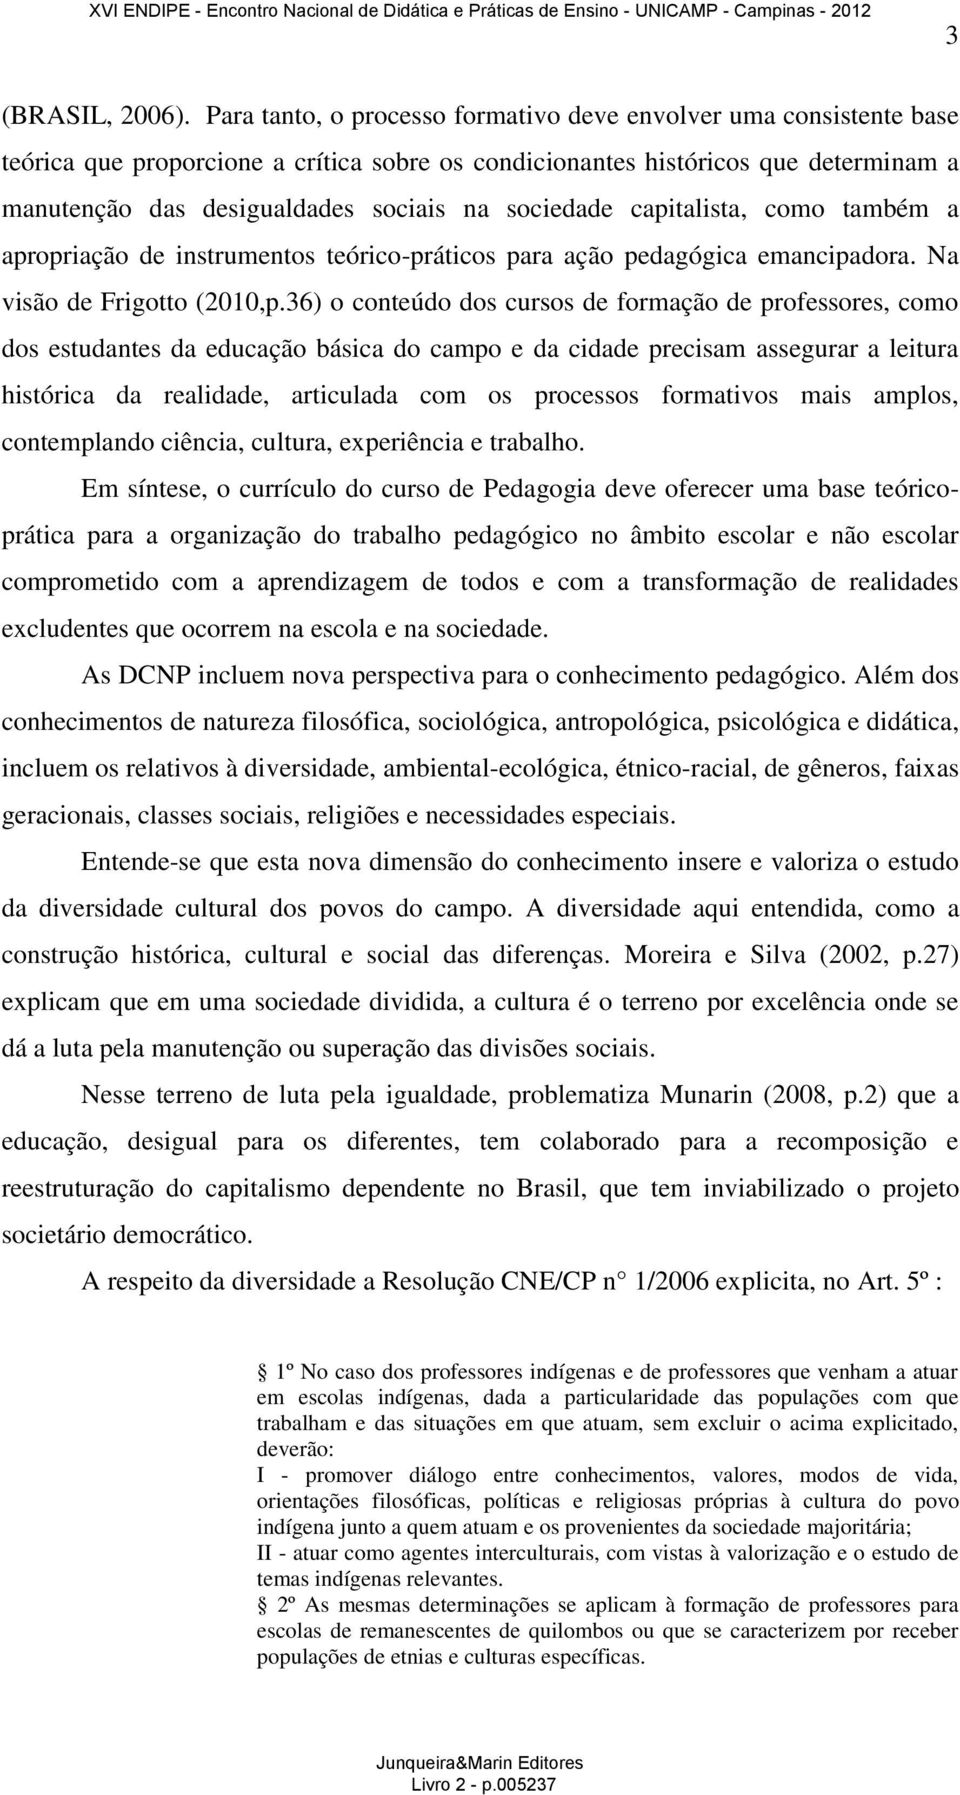 sociedade capitalista, como também a apropriação de instrumentos teórico-práticos para ação pedagógica emancipadora. Na visão de Frigotto (2010,p.